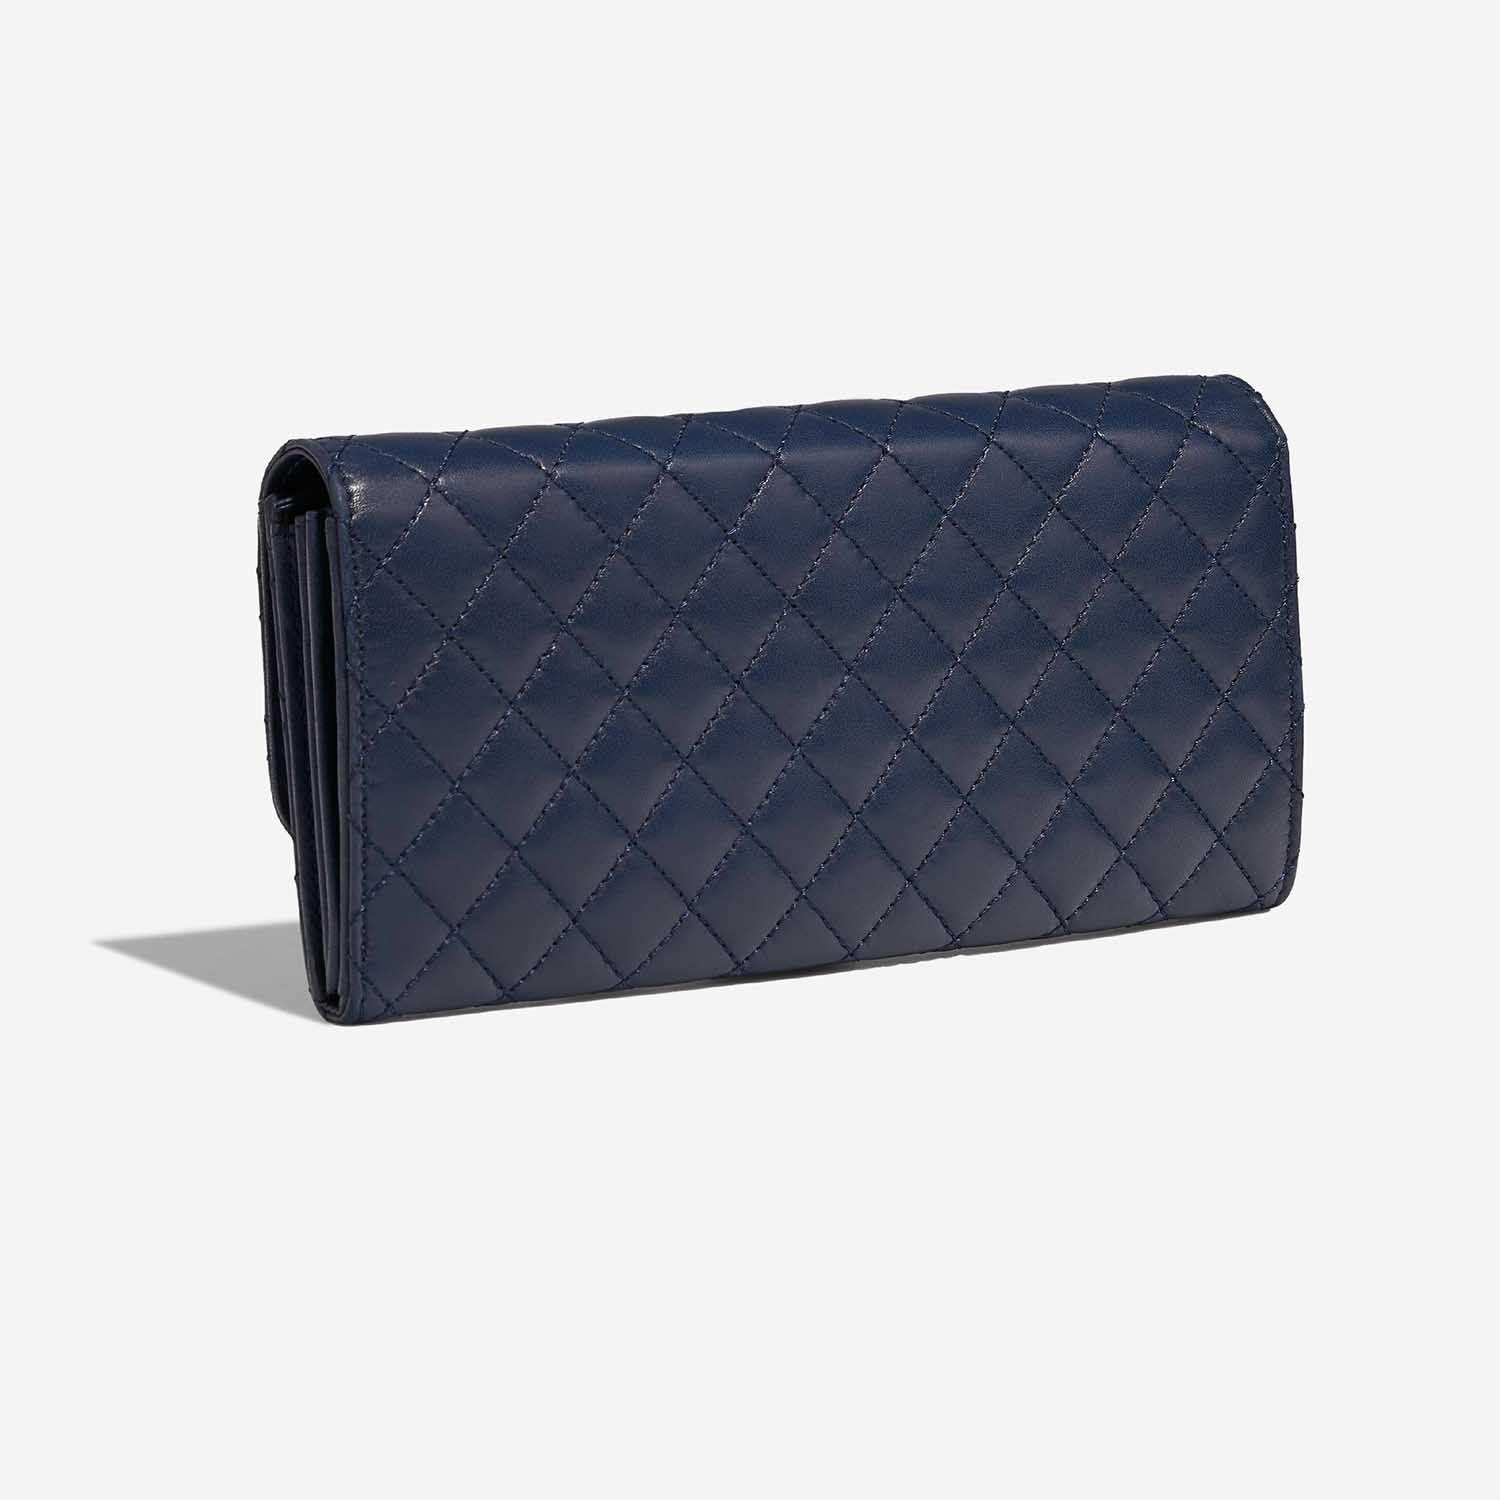 Chanel Timeless Medium DarkBlue 7SB S | Verkaufen Sie Ihre Designer-Tasche auf Saclab.com